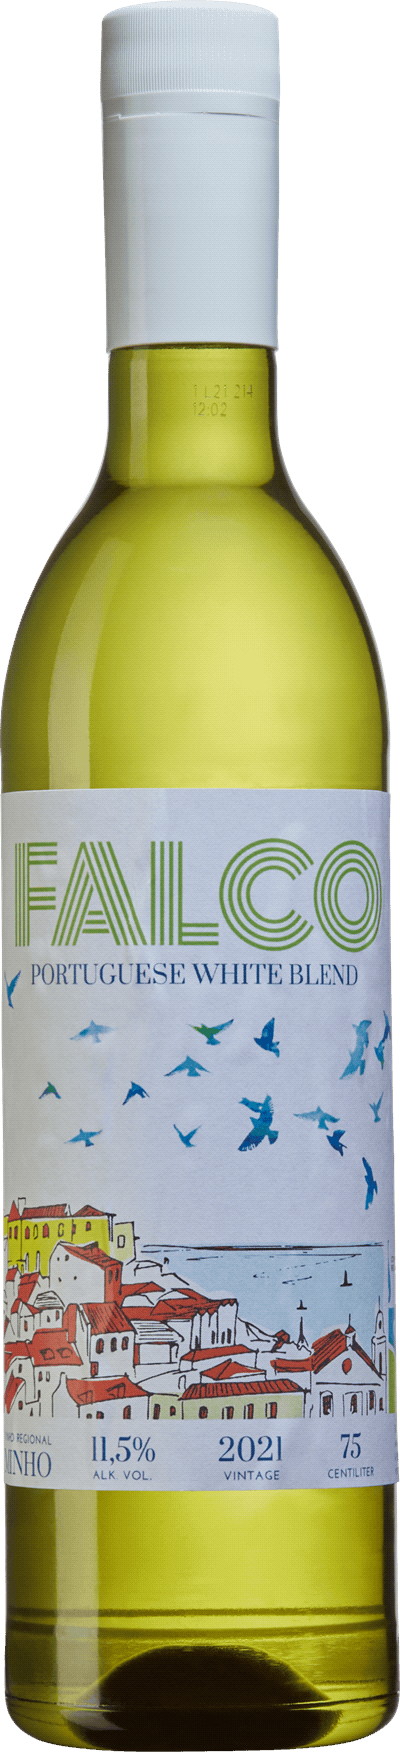 Falco Portuguese White Blend 2021 - DinVinguide Falco Portuguese White Blend 2021